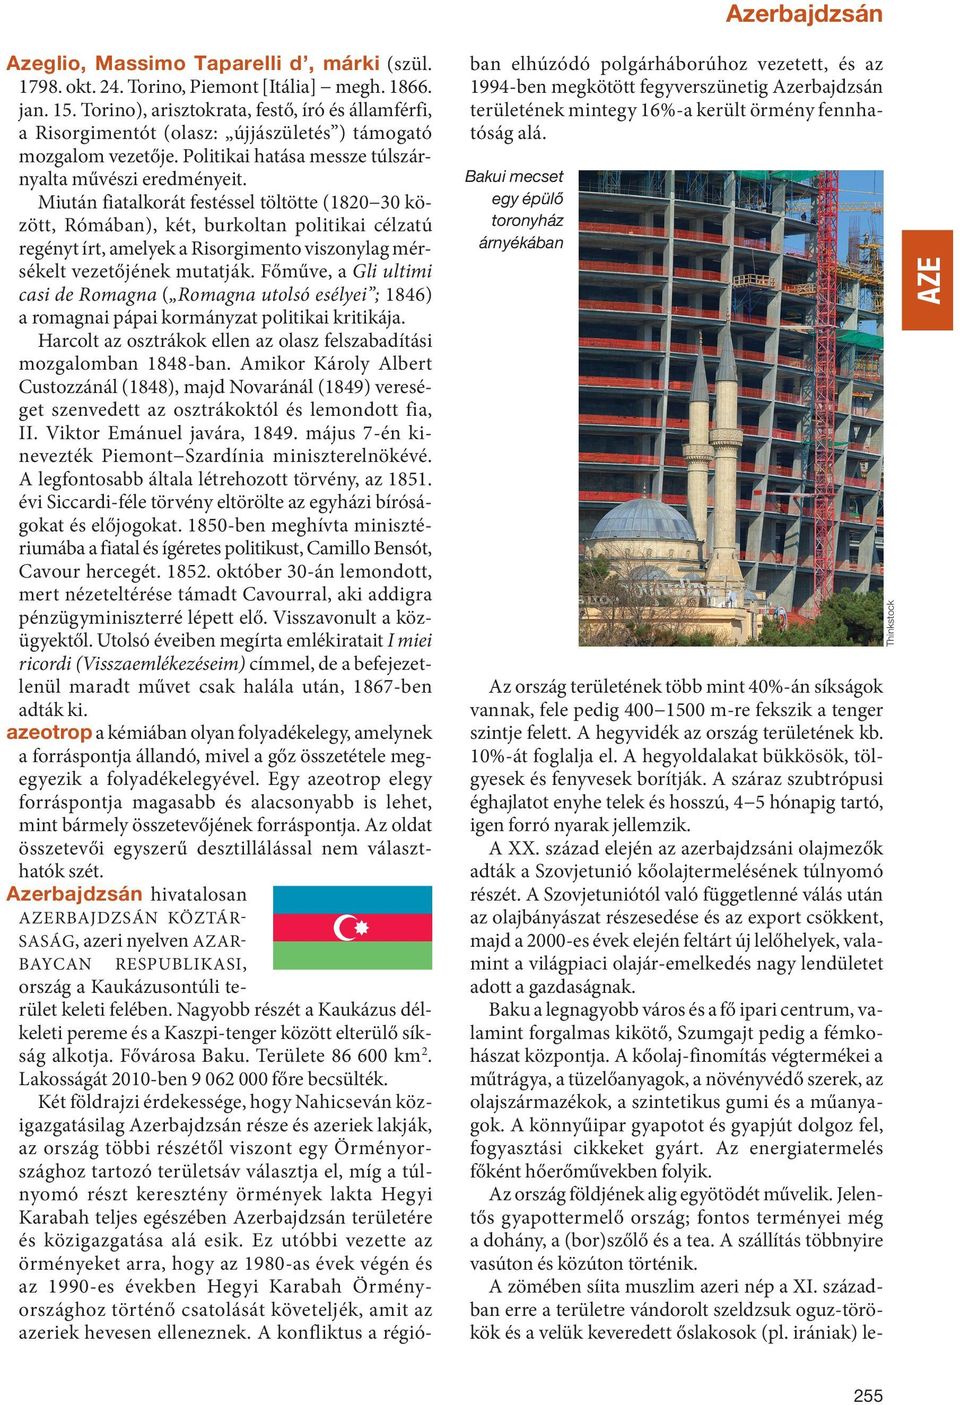 Két földrajzi érdekessége, hogy Nahicseván közigazgatásilag Azerbajdzsán része és azeriek lakják, az ország többi részétől viszont egy Örményországhoz tartozó területsáv választja el, míg a túlnyomó